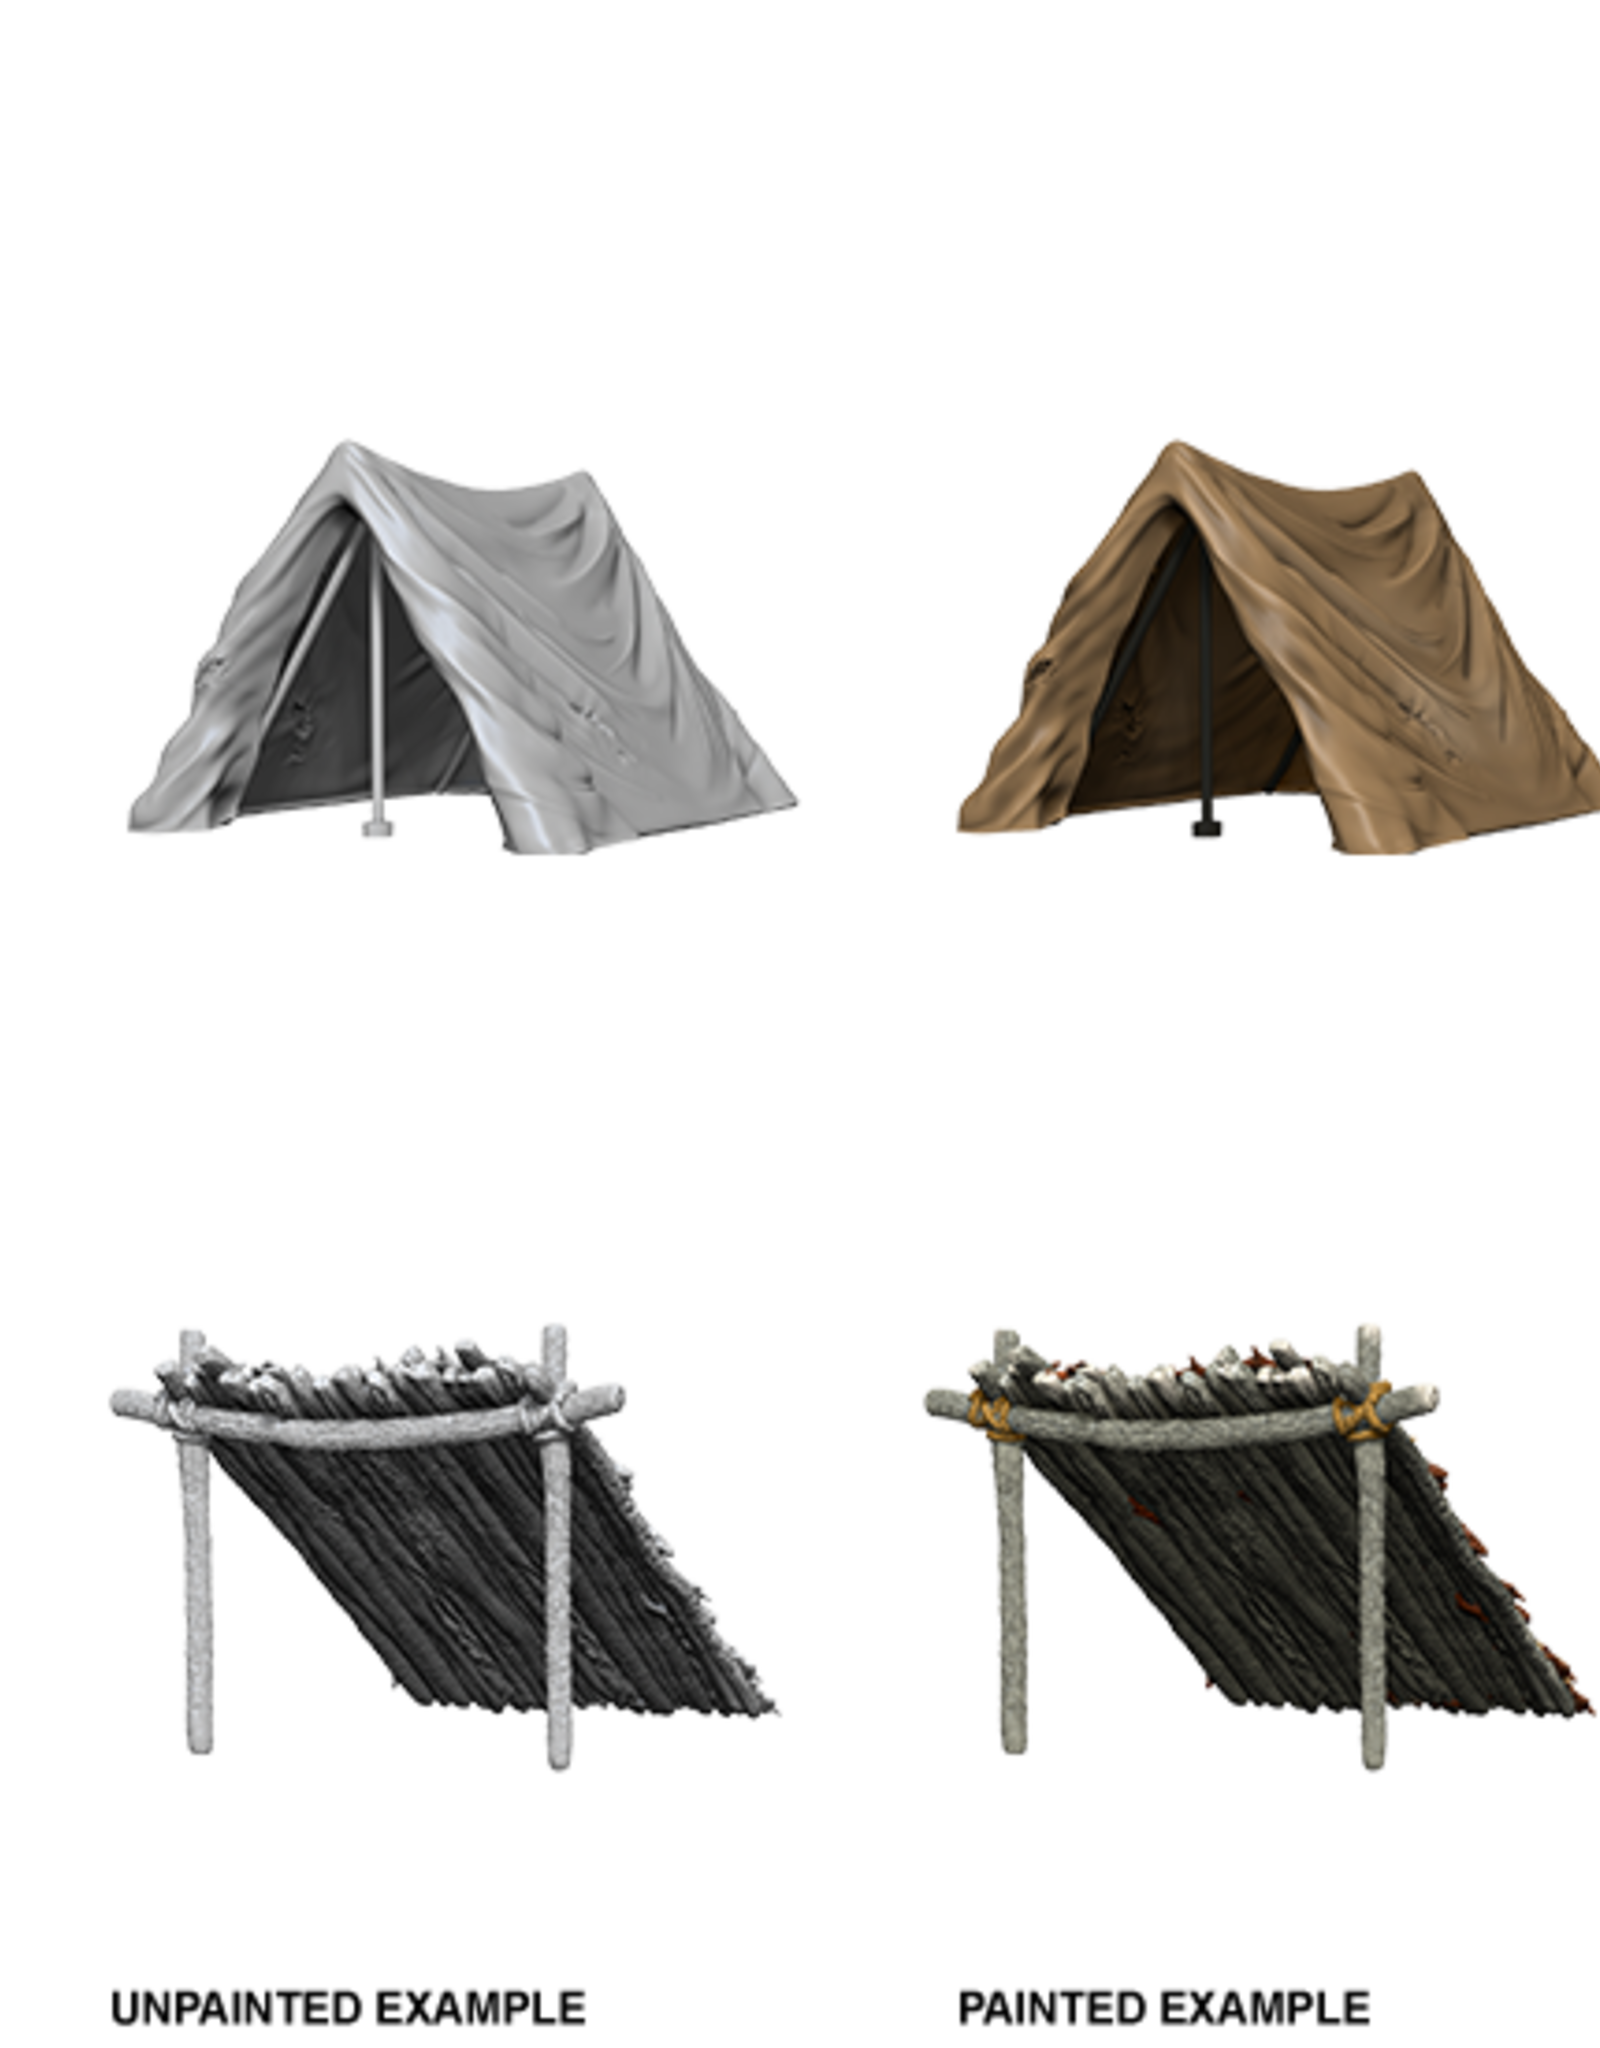 WizKids WizKids Deep Cuts: Tent & Lean-To